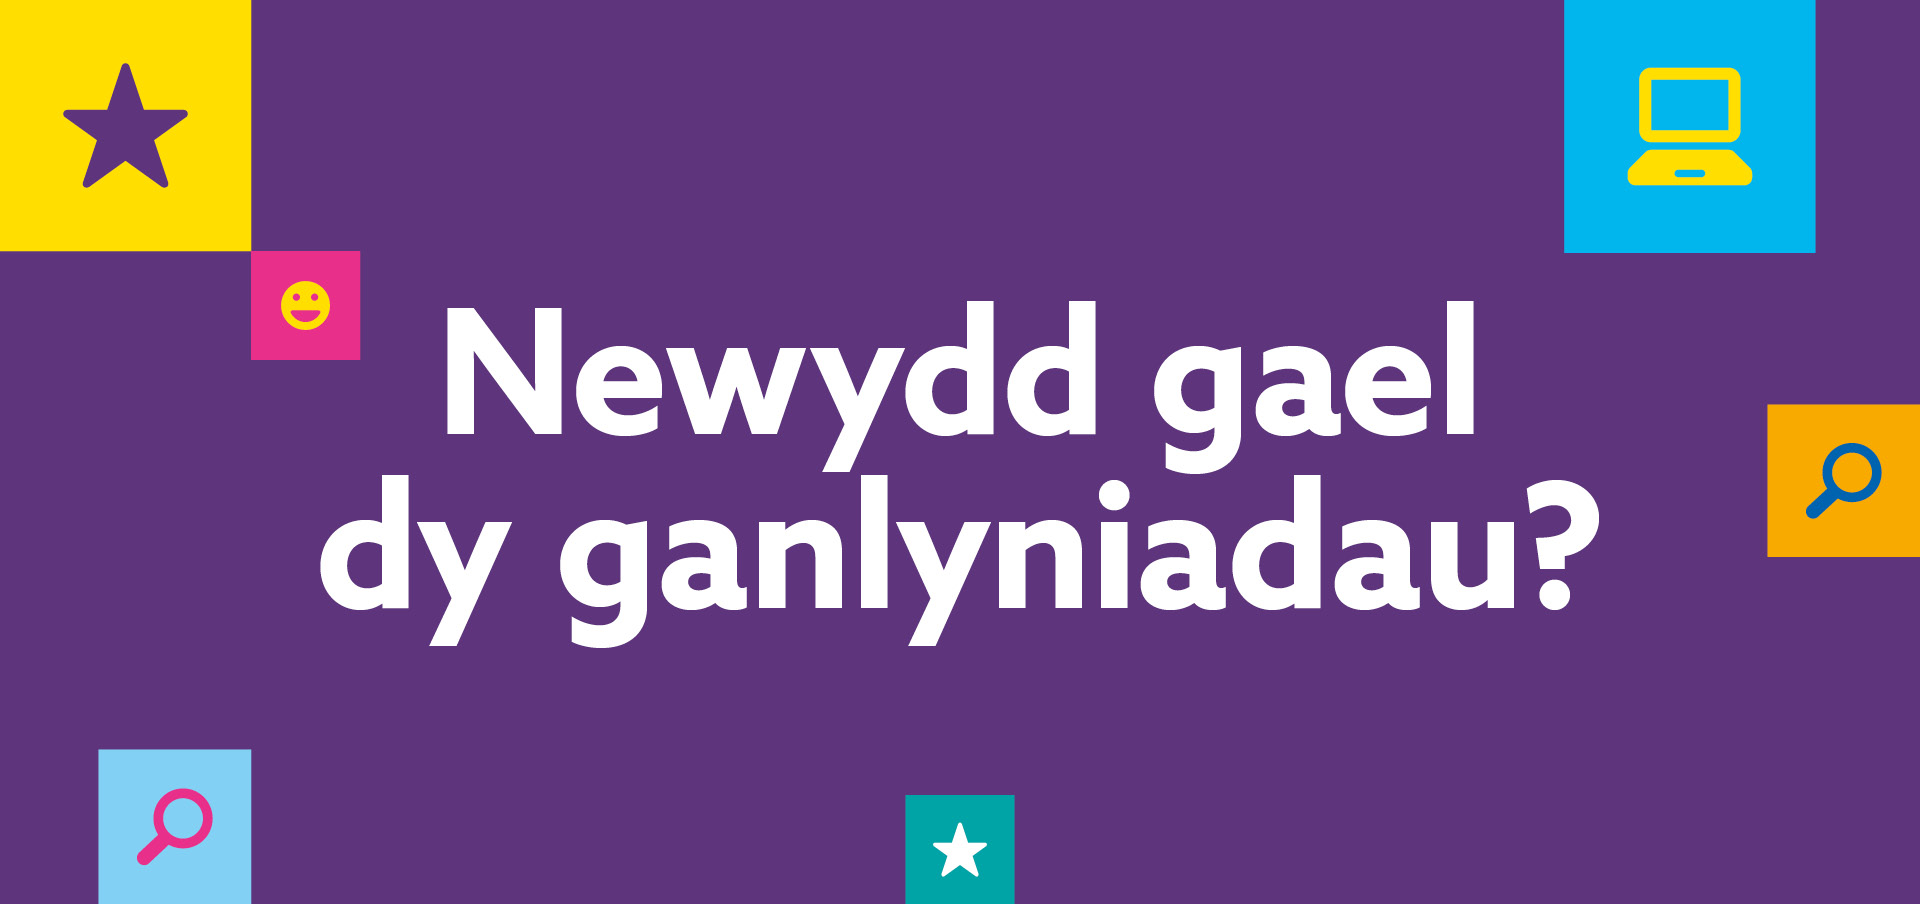 ‘Newydd gael dy ganlyniadau?’ wedi’i amgylchynu gan emojis